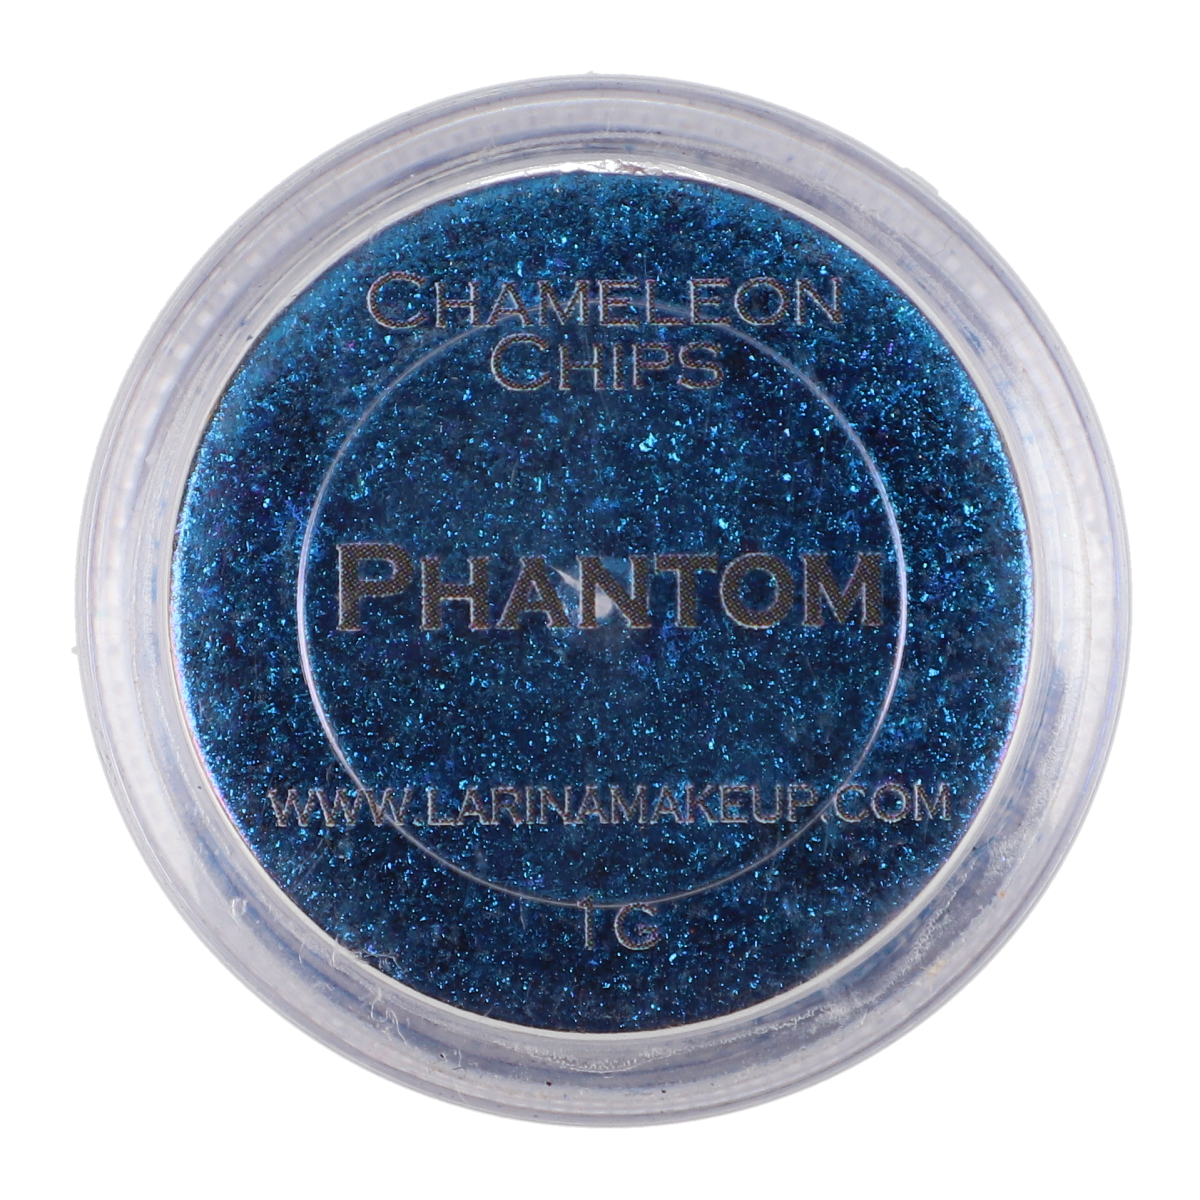 Chips Chameleon Phantom 1 gr